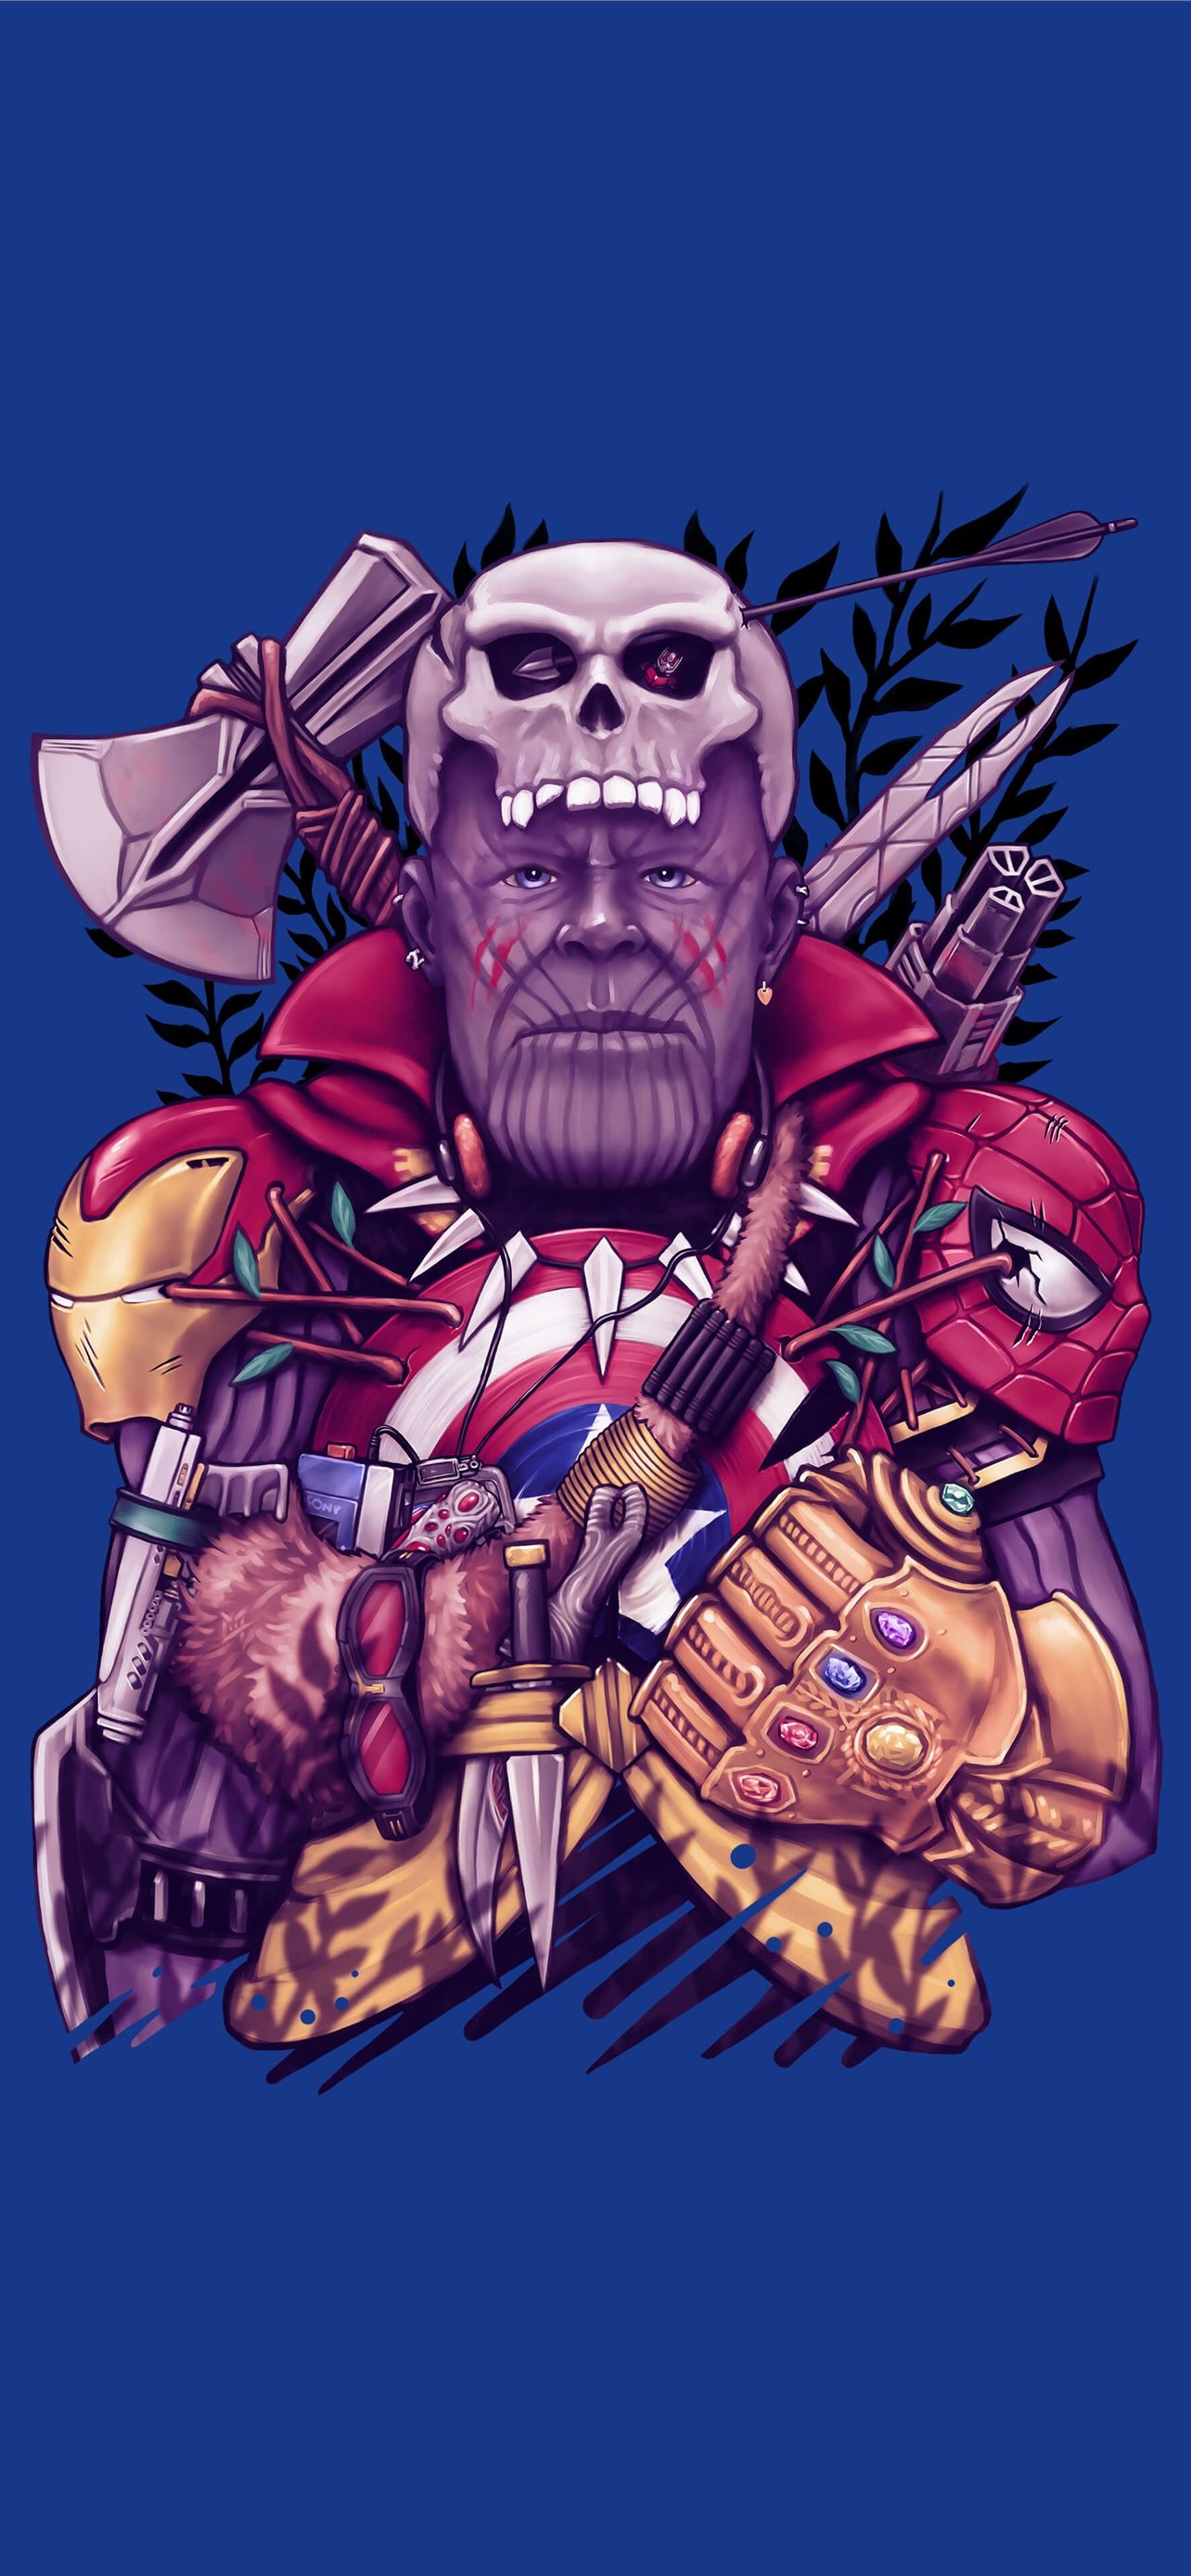 Avengers endgame avengers infinitywar endgame iPhone Wallpapers